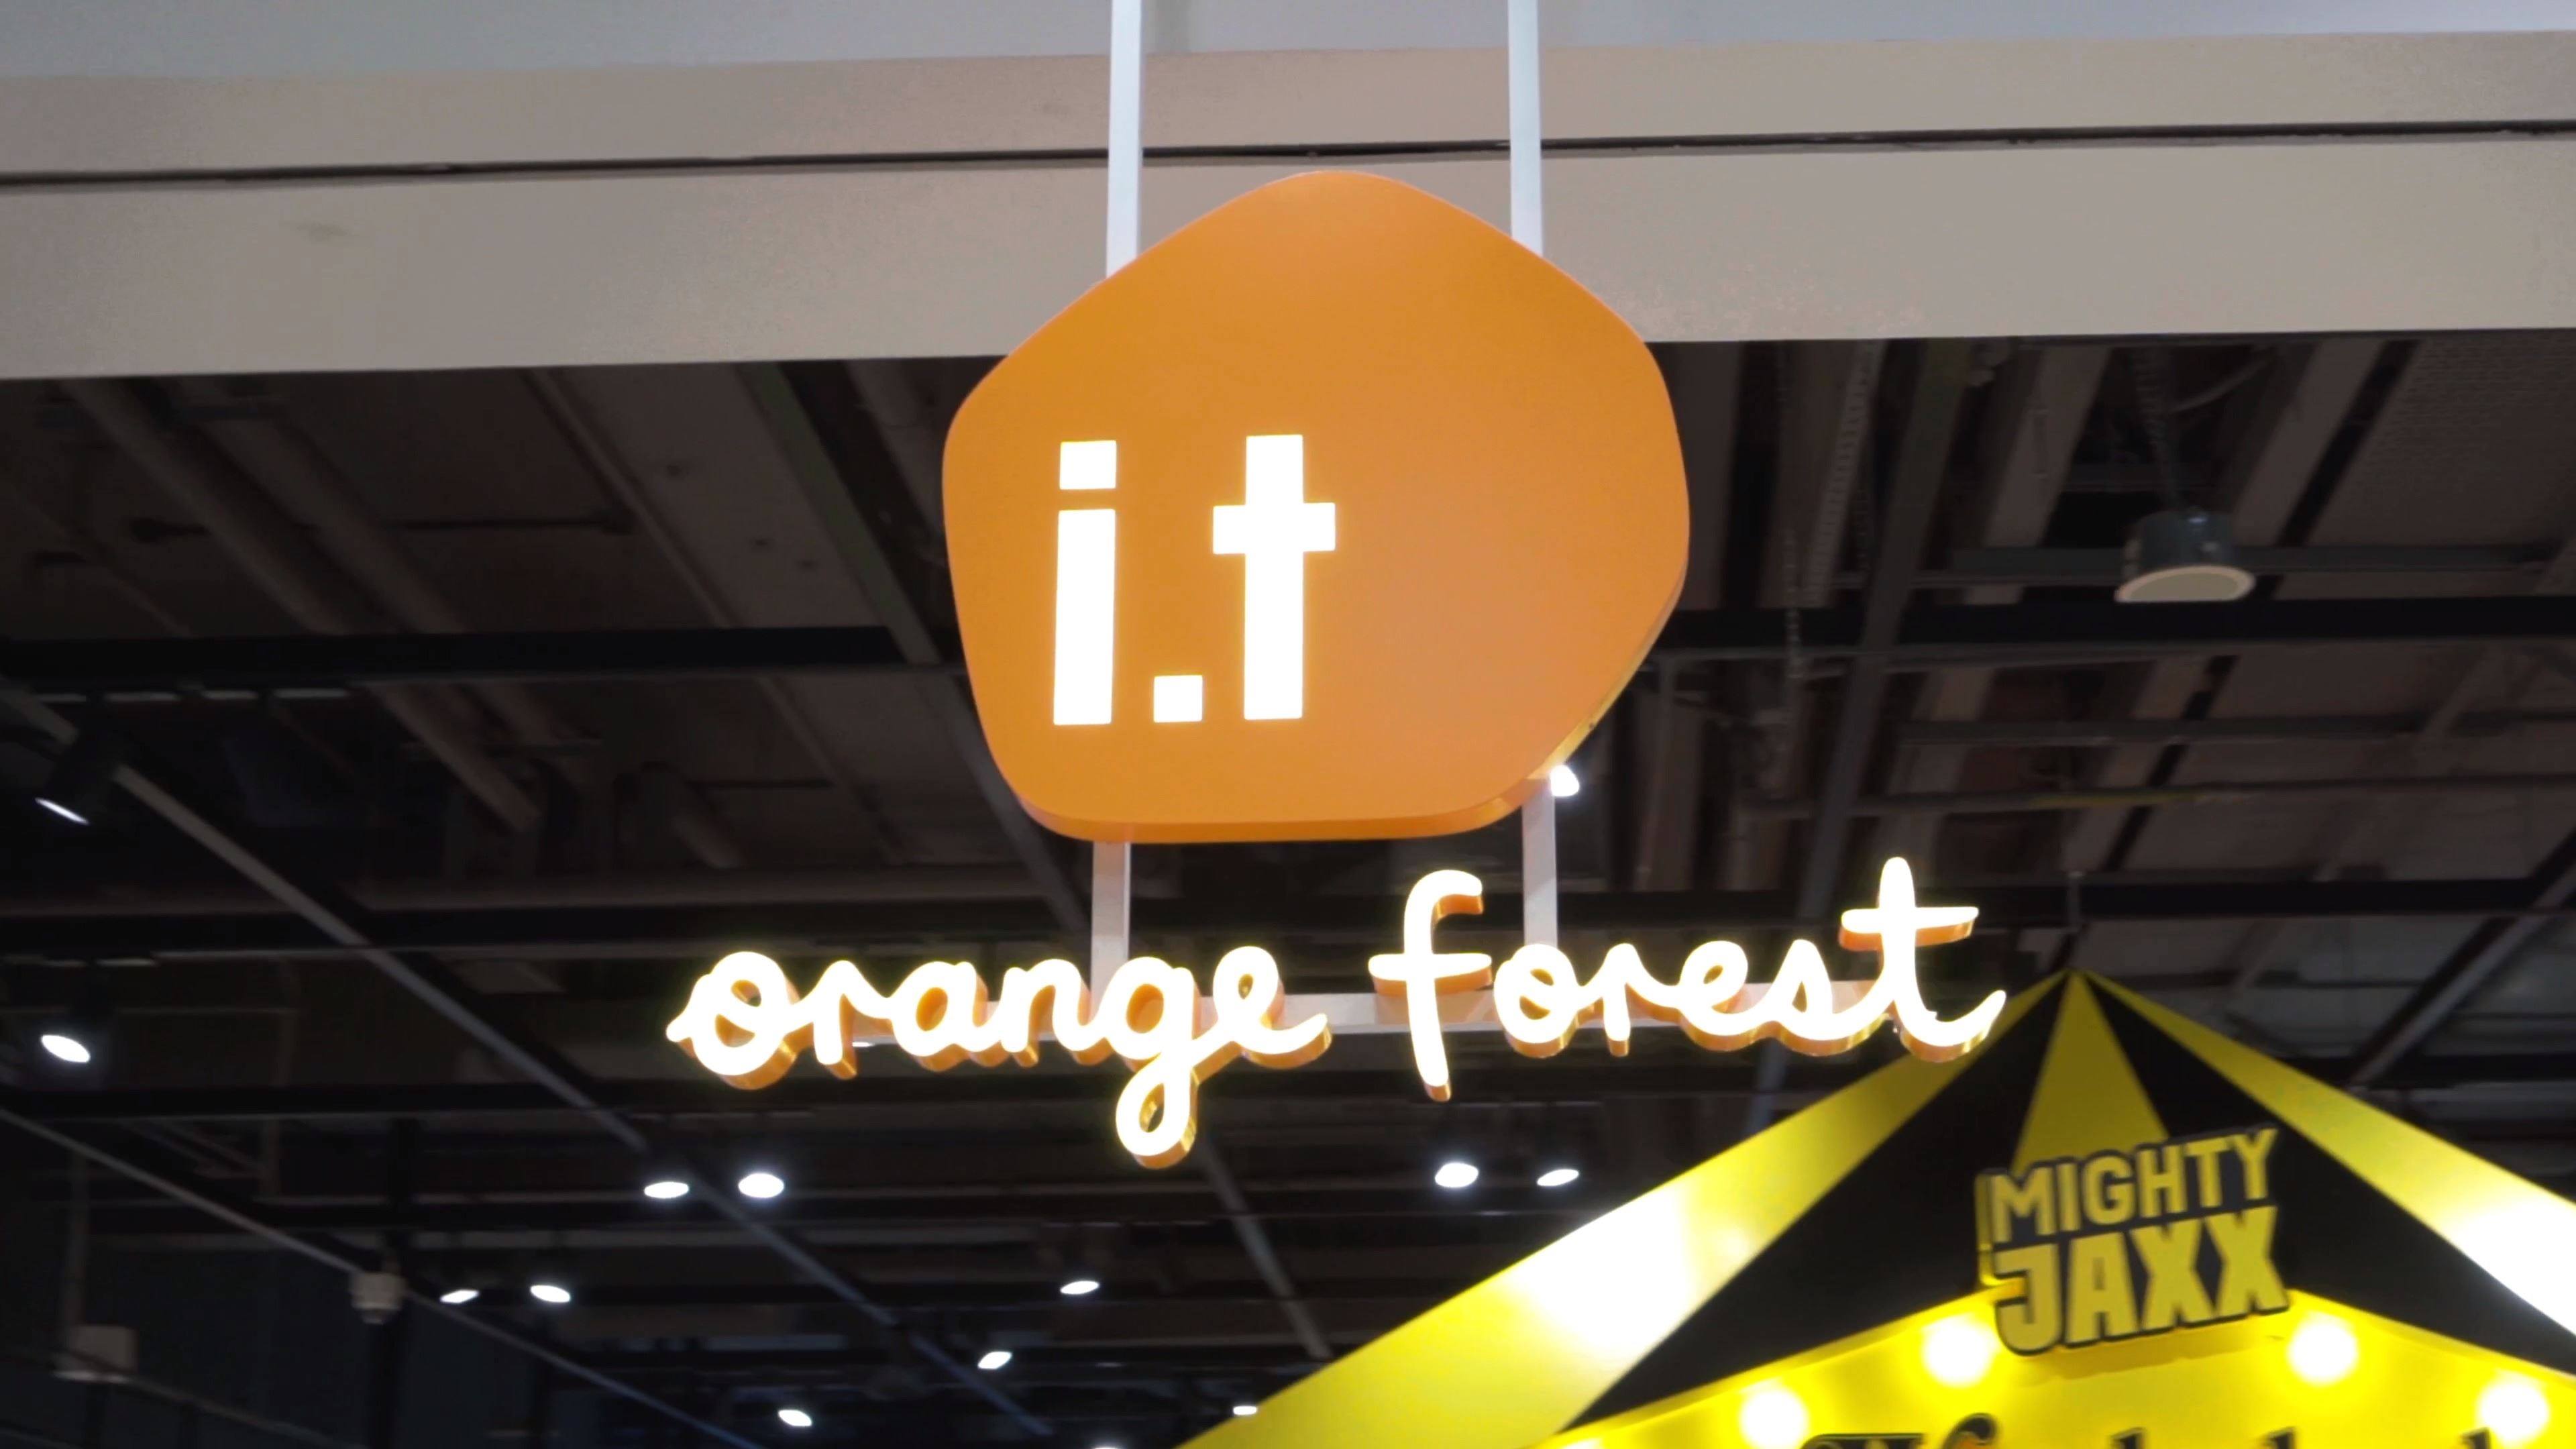 i.t orange forest現已開幕！旗艦店可劃分為多個區域，配合不同主題的獨特裝潢，有如遊走於森林中發掘各式各樣的時尚新品！男女裝和配飾一應俱全，粉絲們當然不能錯過！ i.t orange forest